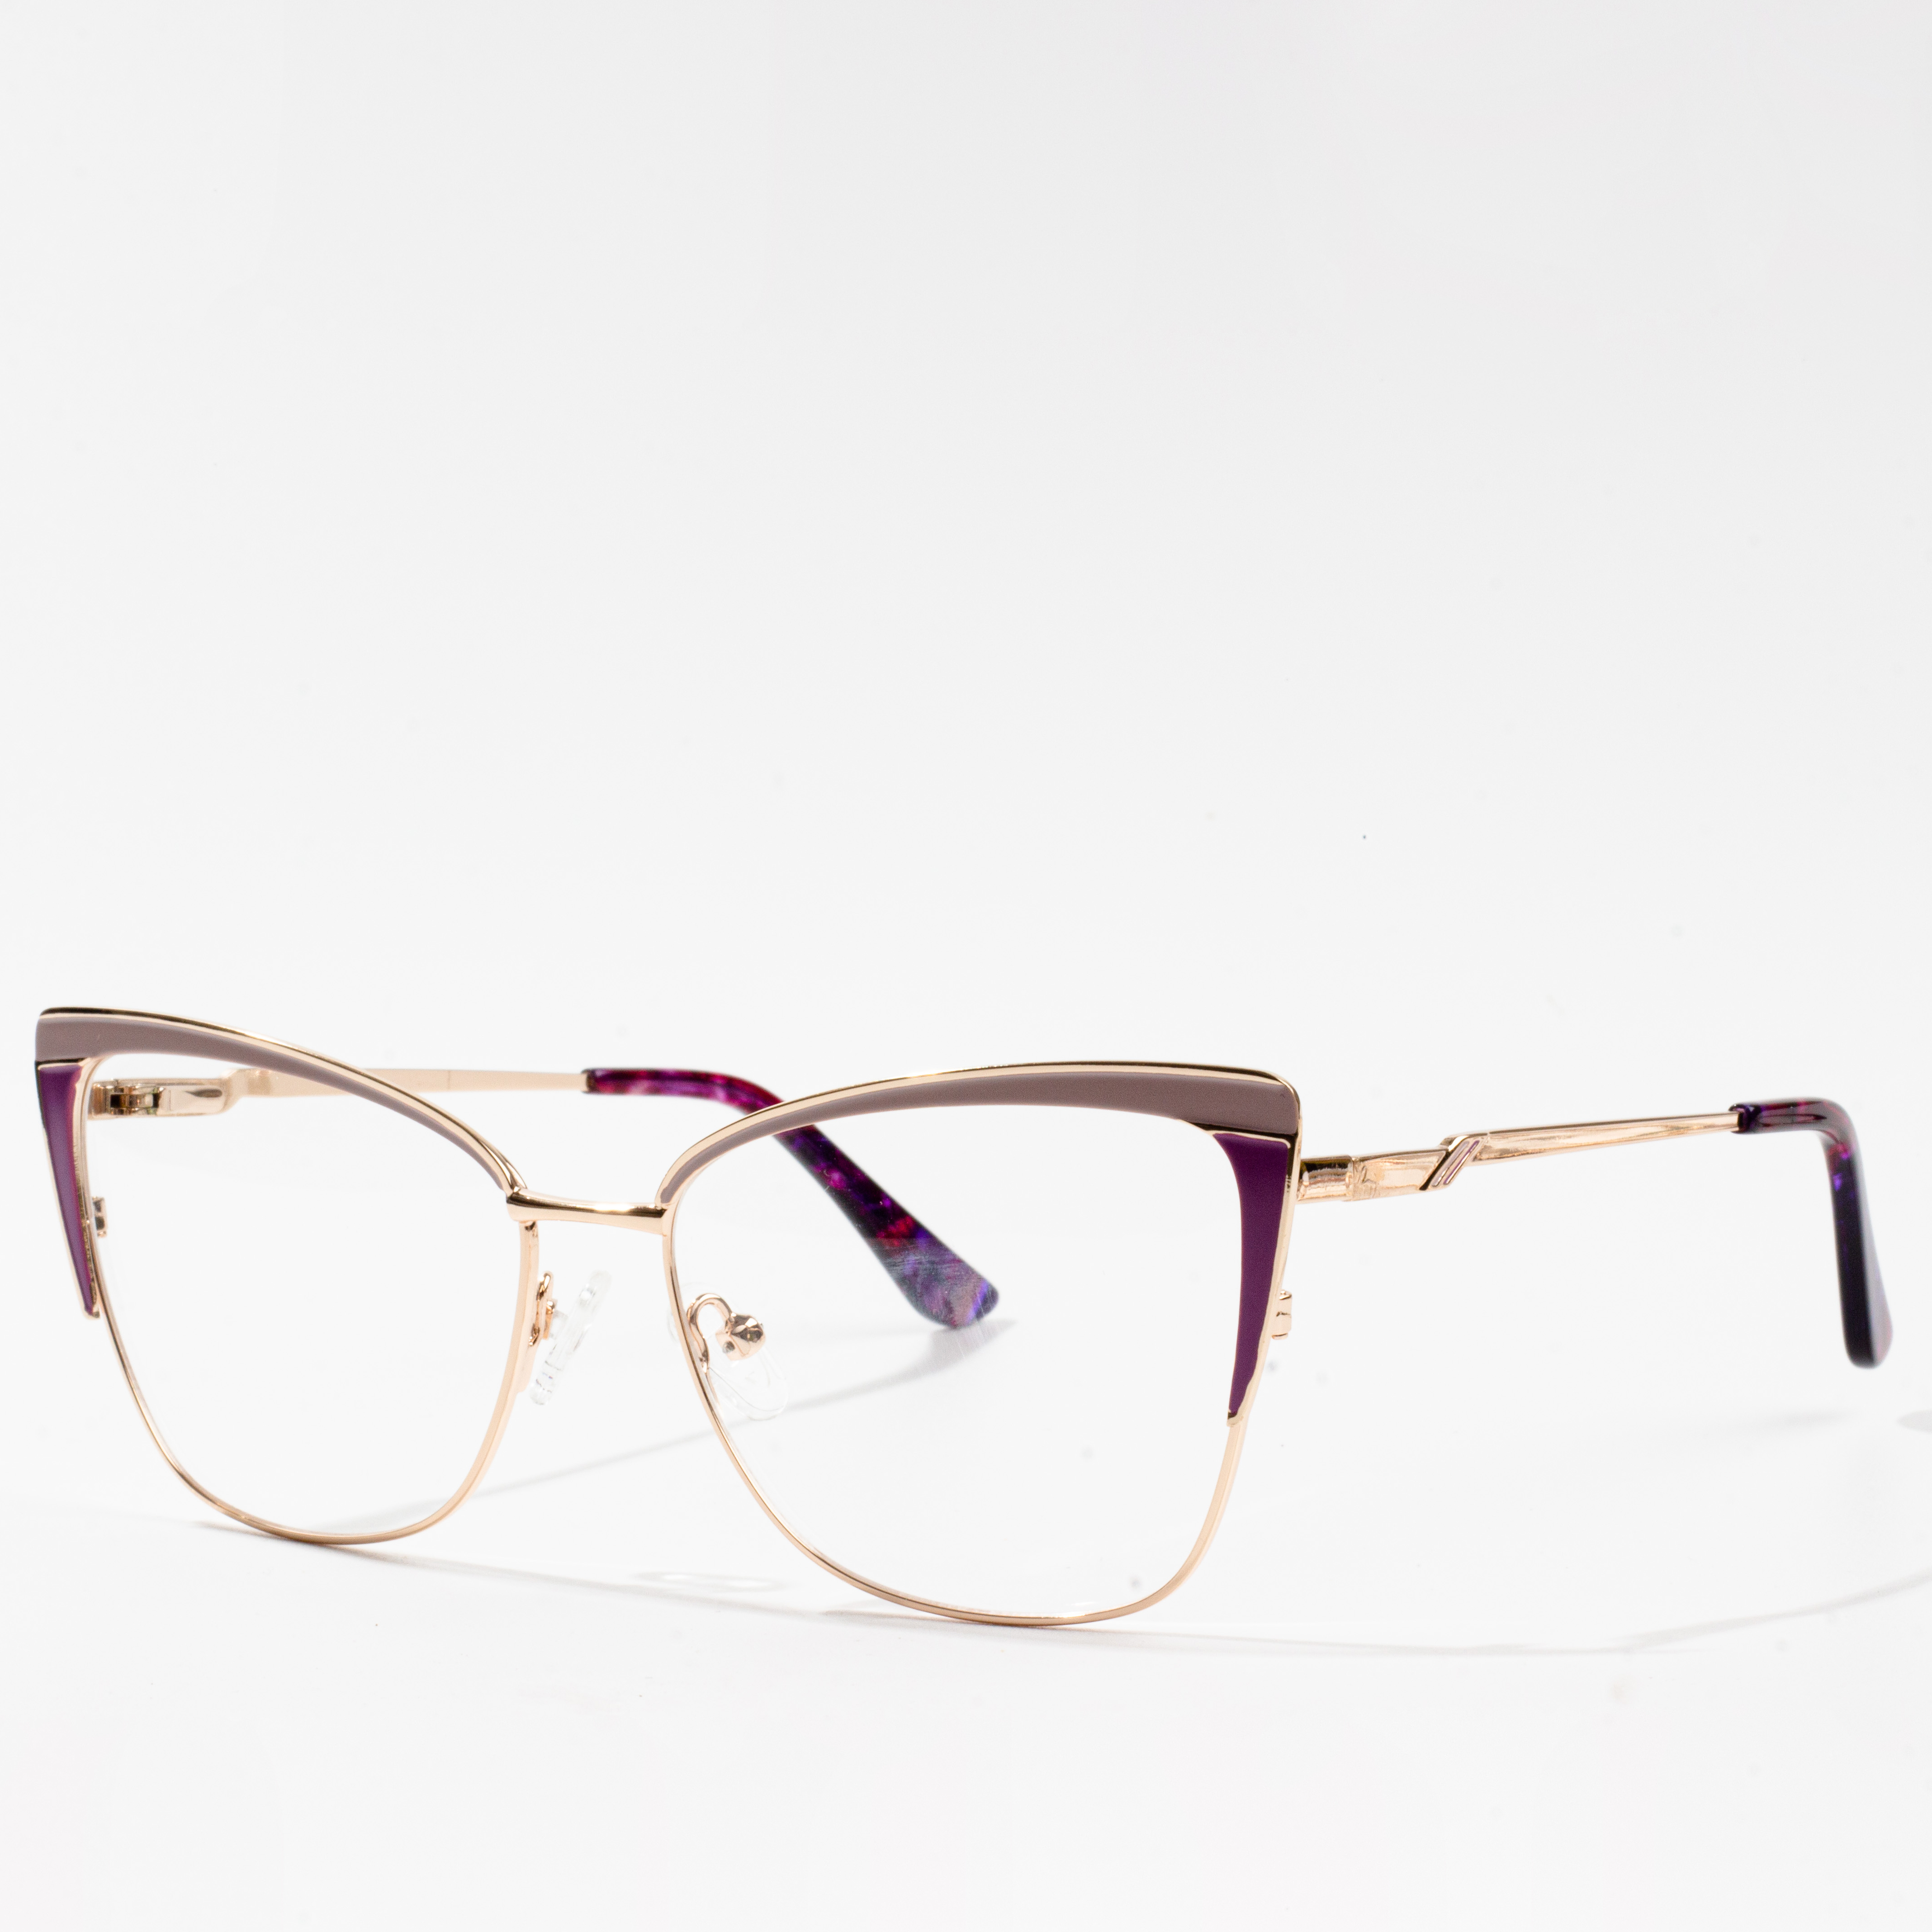 macem-macem jinis frame kacamata